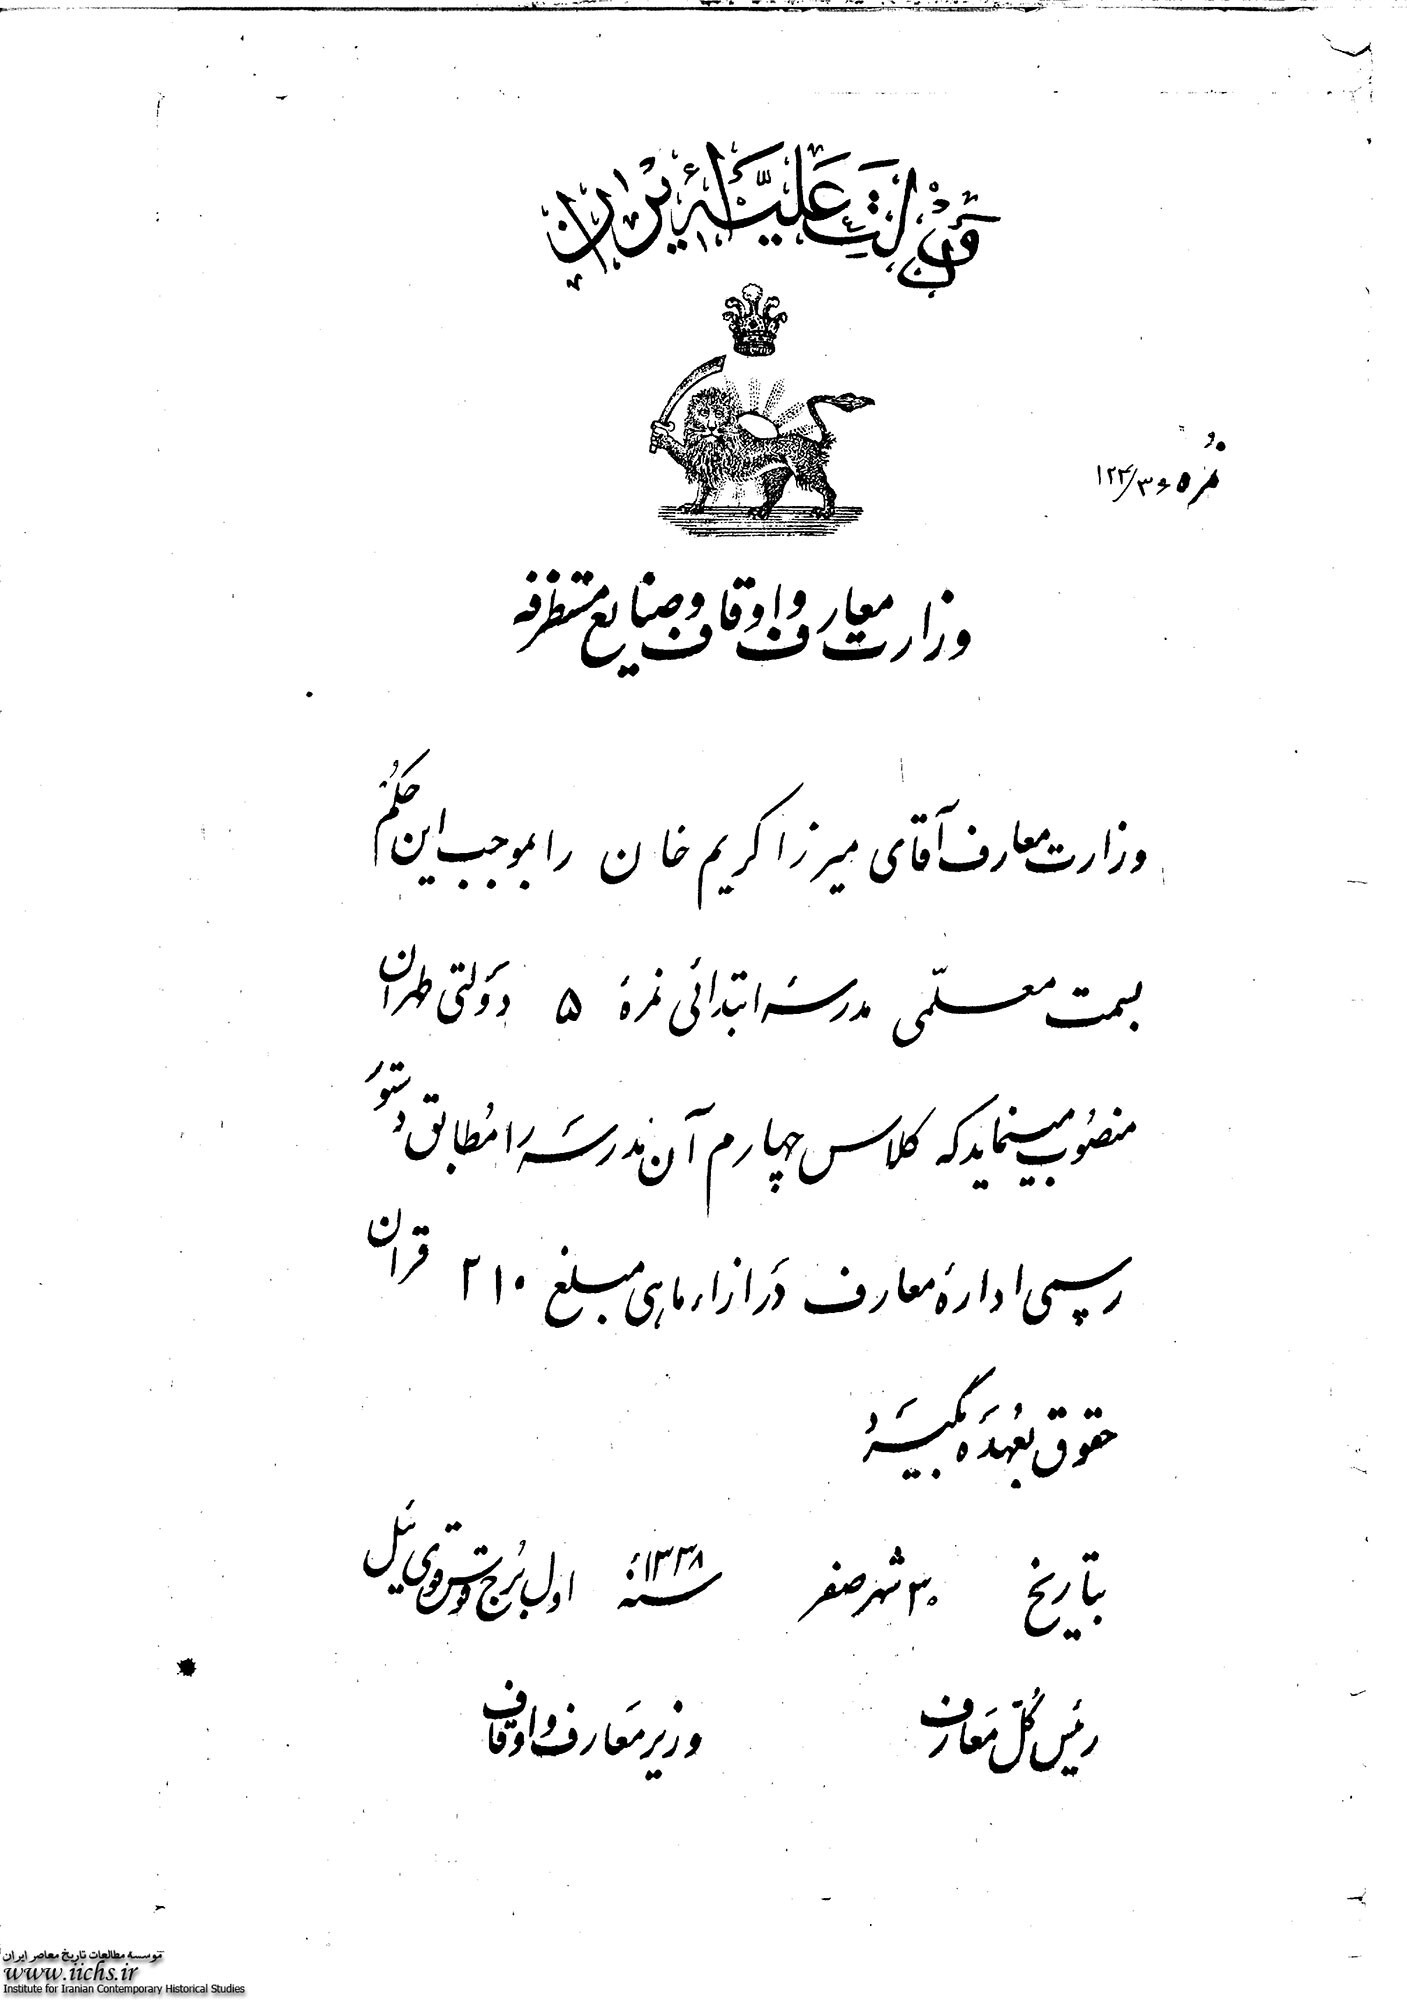 فیش حقوقی عجیب و باور نکردنی یک معلم در دوران قاجار (+عکس)